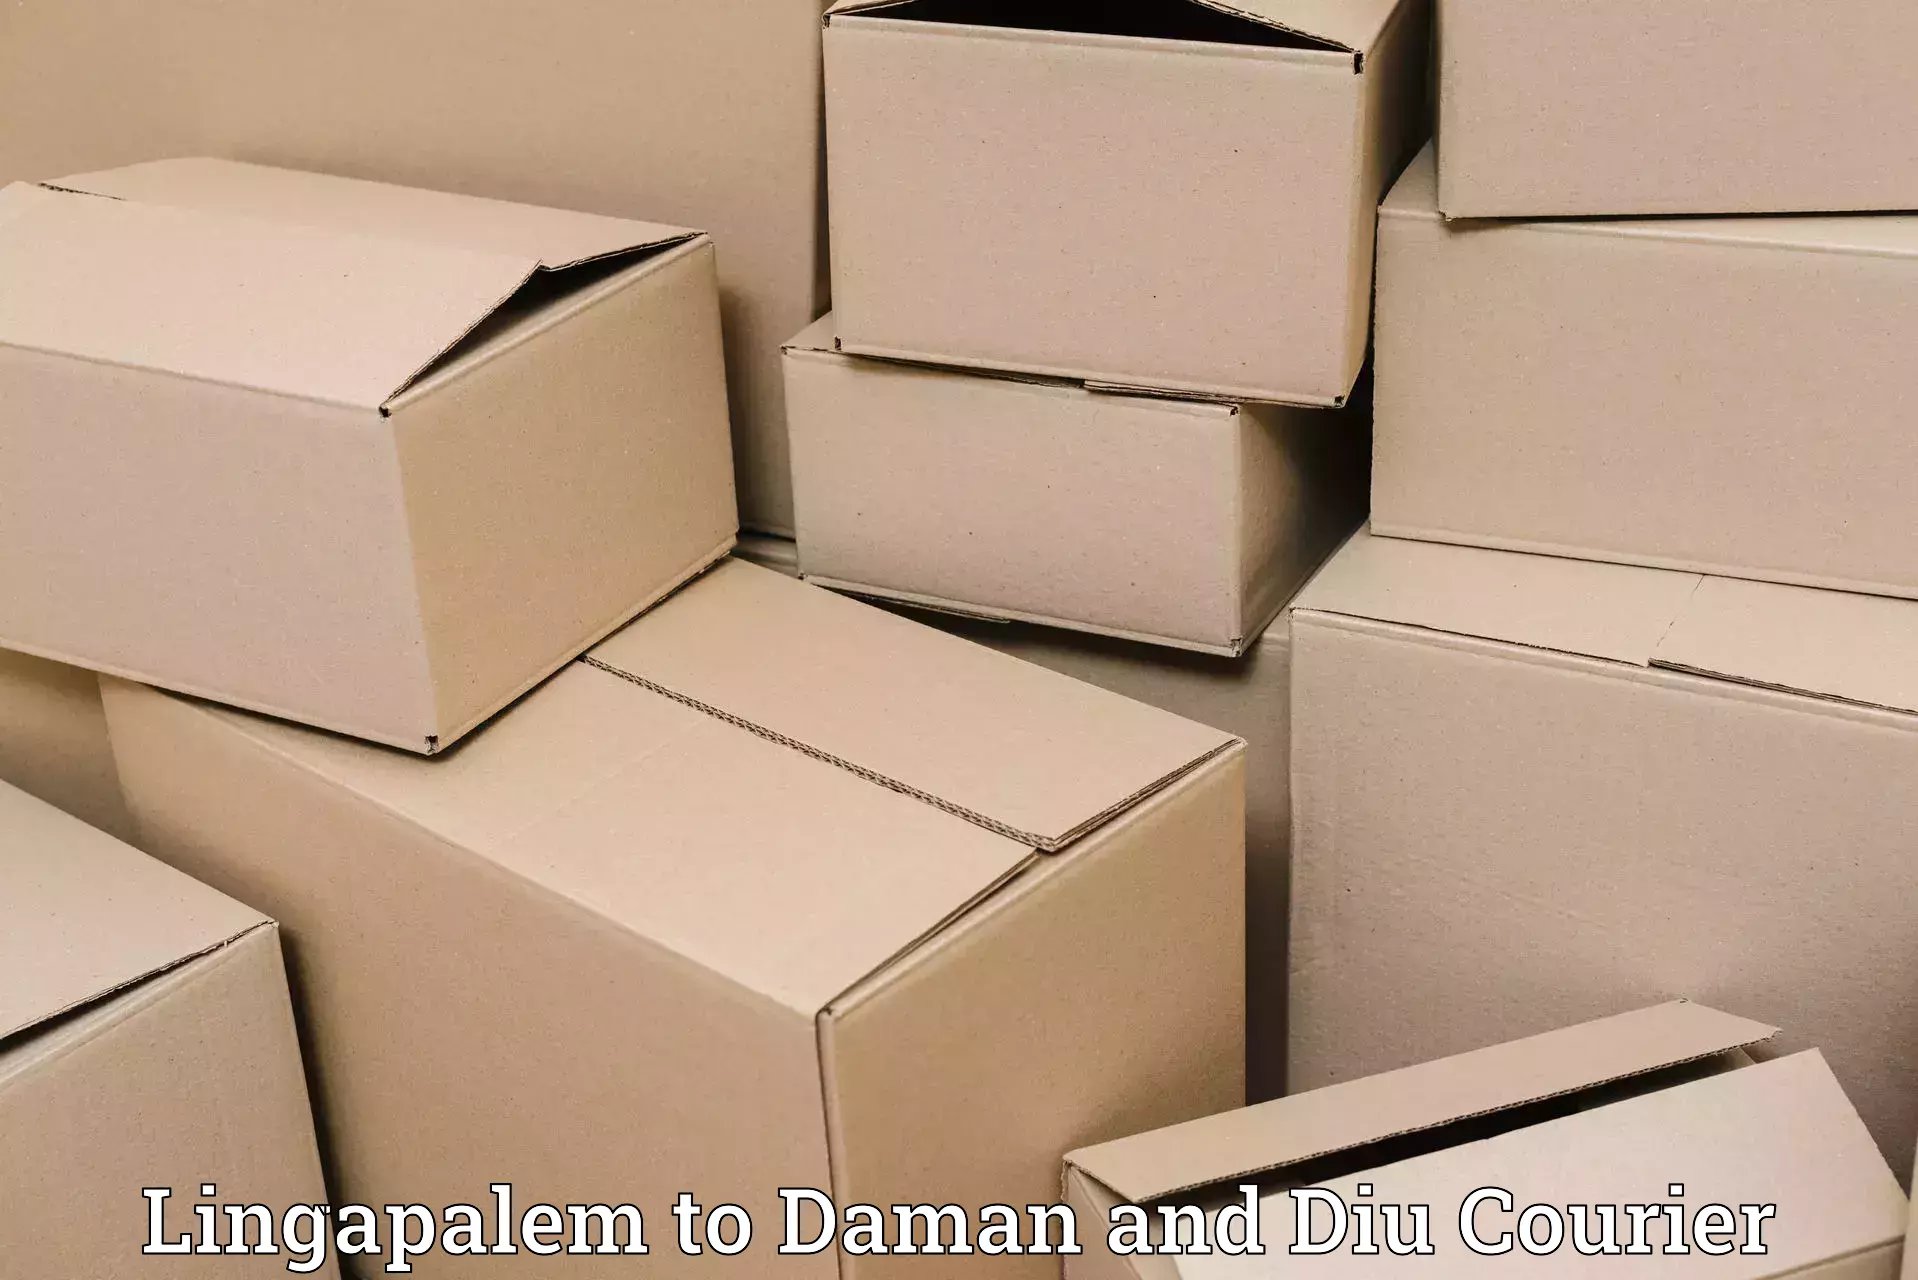 Fragile item shipping Lingapalem to Diu